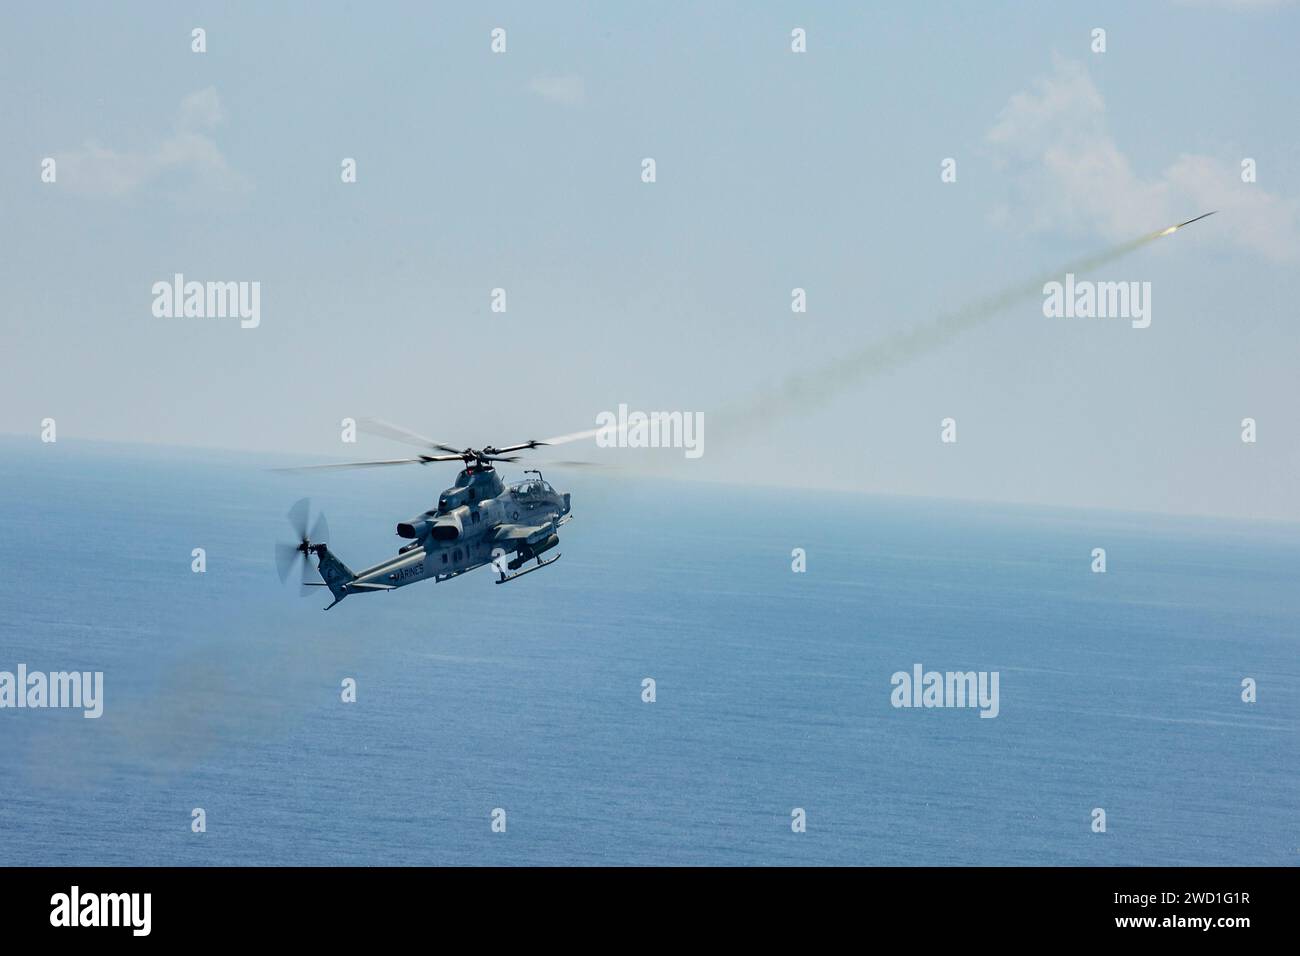 Un elicottero Viper AH-1Z del corpo dei Marines degli Stati Uniti spara un'esplosione di addestramento durante un evento di addestramento con fuoco dal vivo. Foto Stock